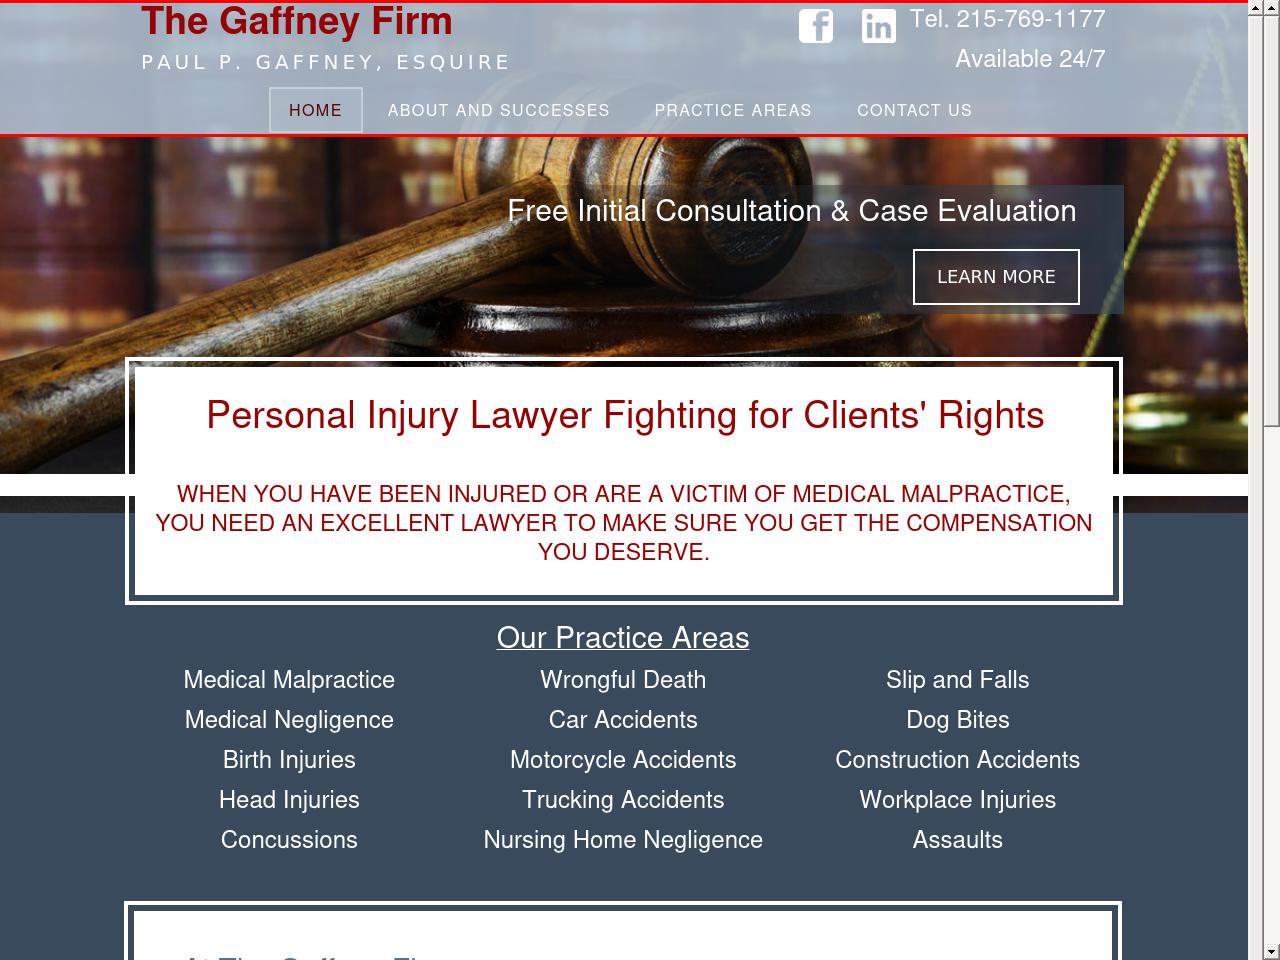 The Gaffney Firm - Philadelphia PA Lawyers